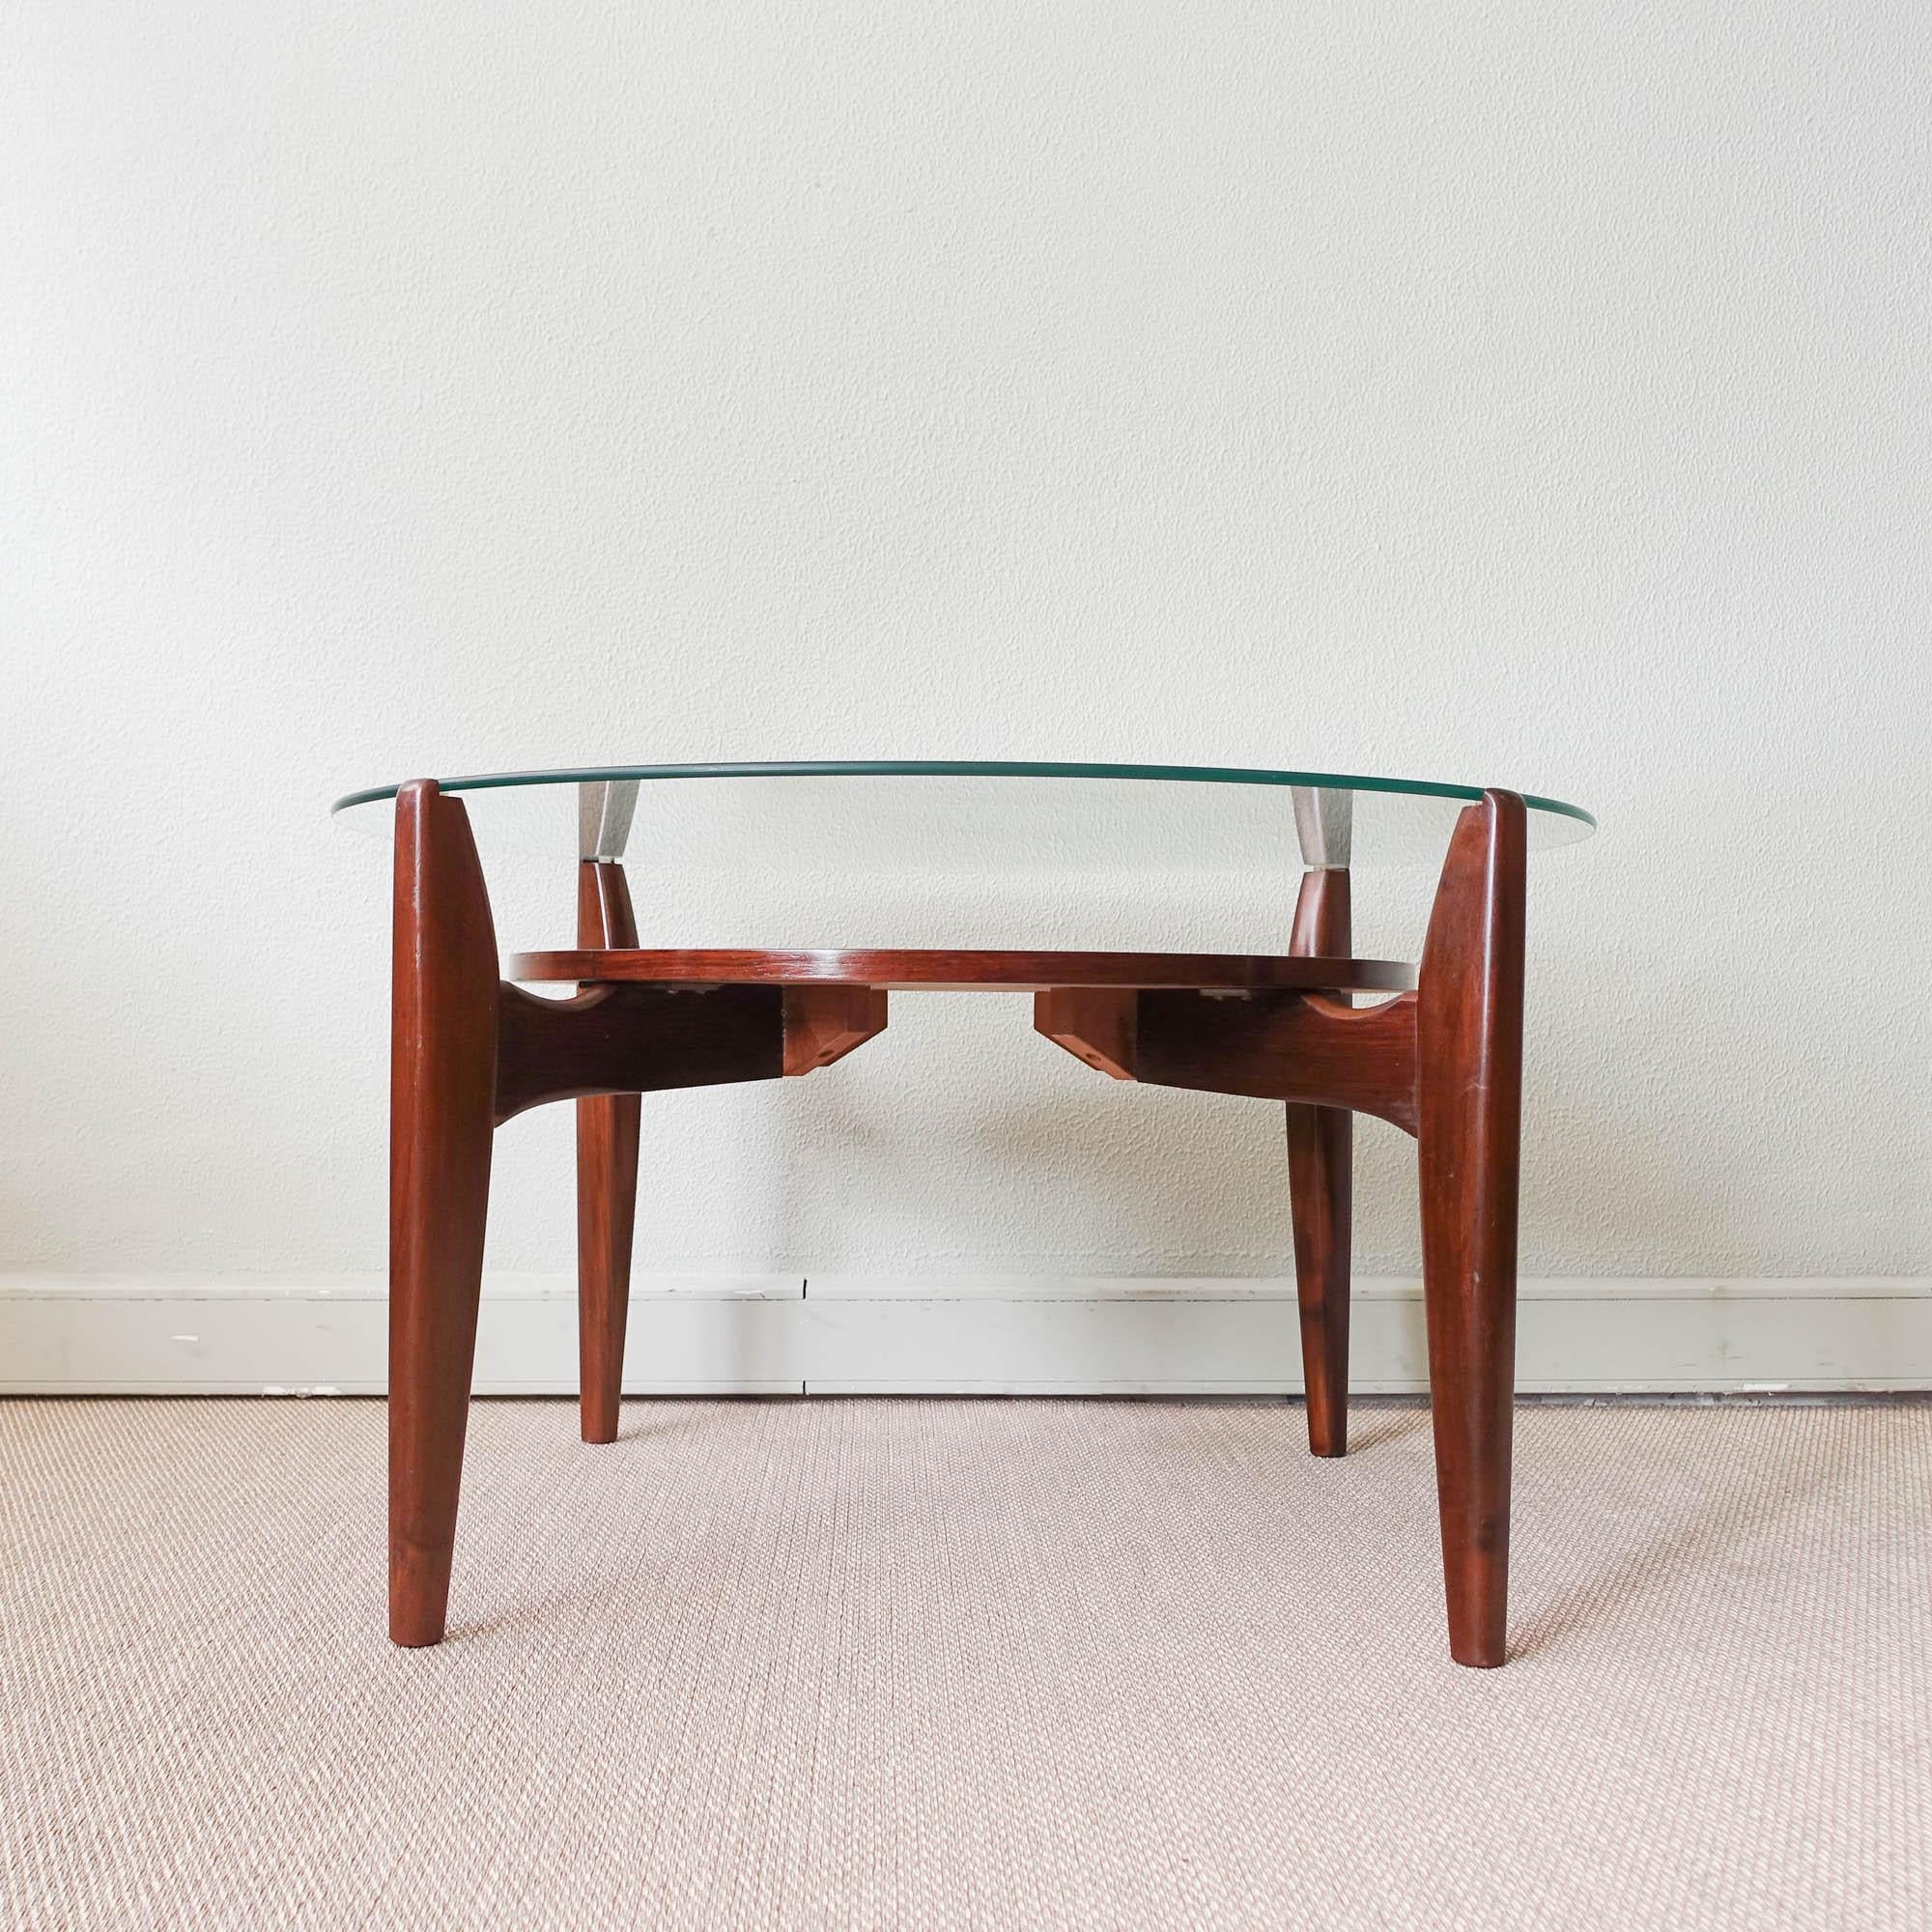 Cette table basse a été conçue et produite par Wilhelm Renz, en Allemagne, dans les années 1960. Il présente un cadre en noyer massif d'inspiration organique et un plateau circulaire en verre. Un design unique. En état original et bon état vintage.